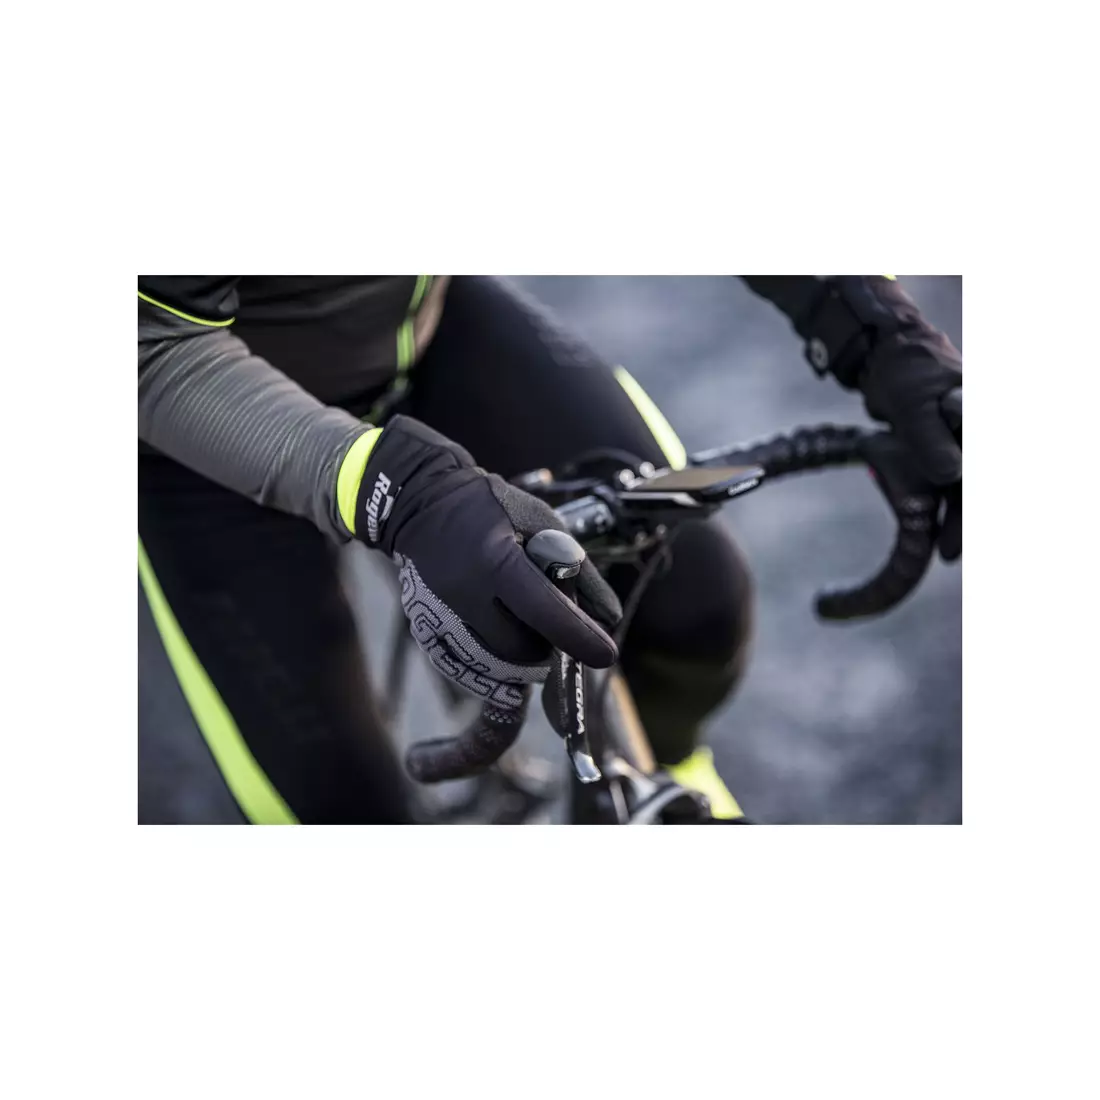 Mănuși de iarnă pentru ciclism ROGELLI FLASH, softshell, negre